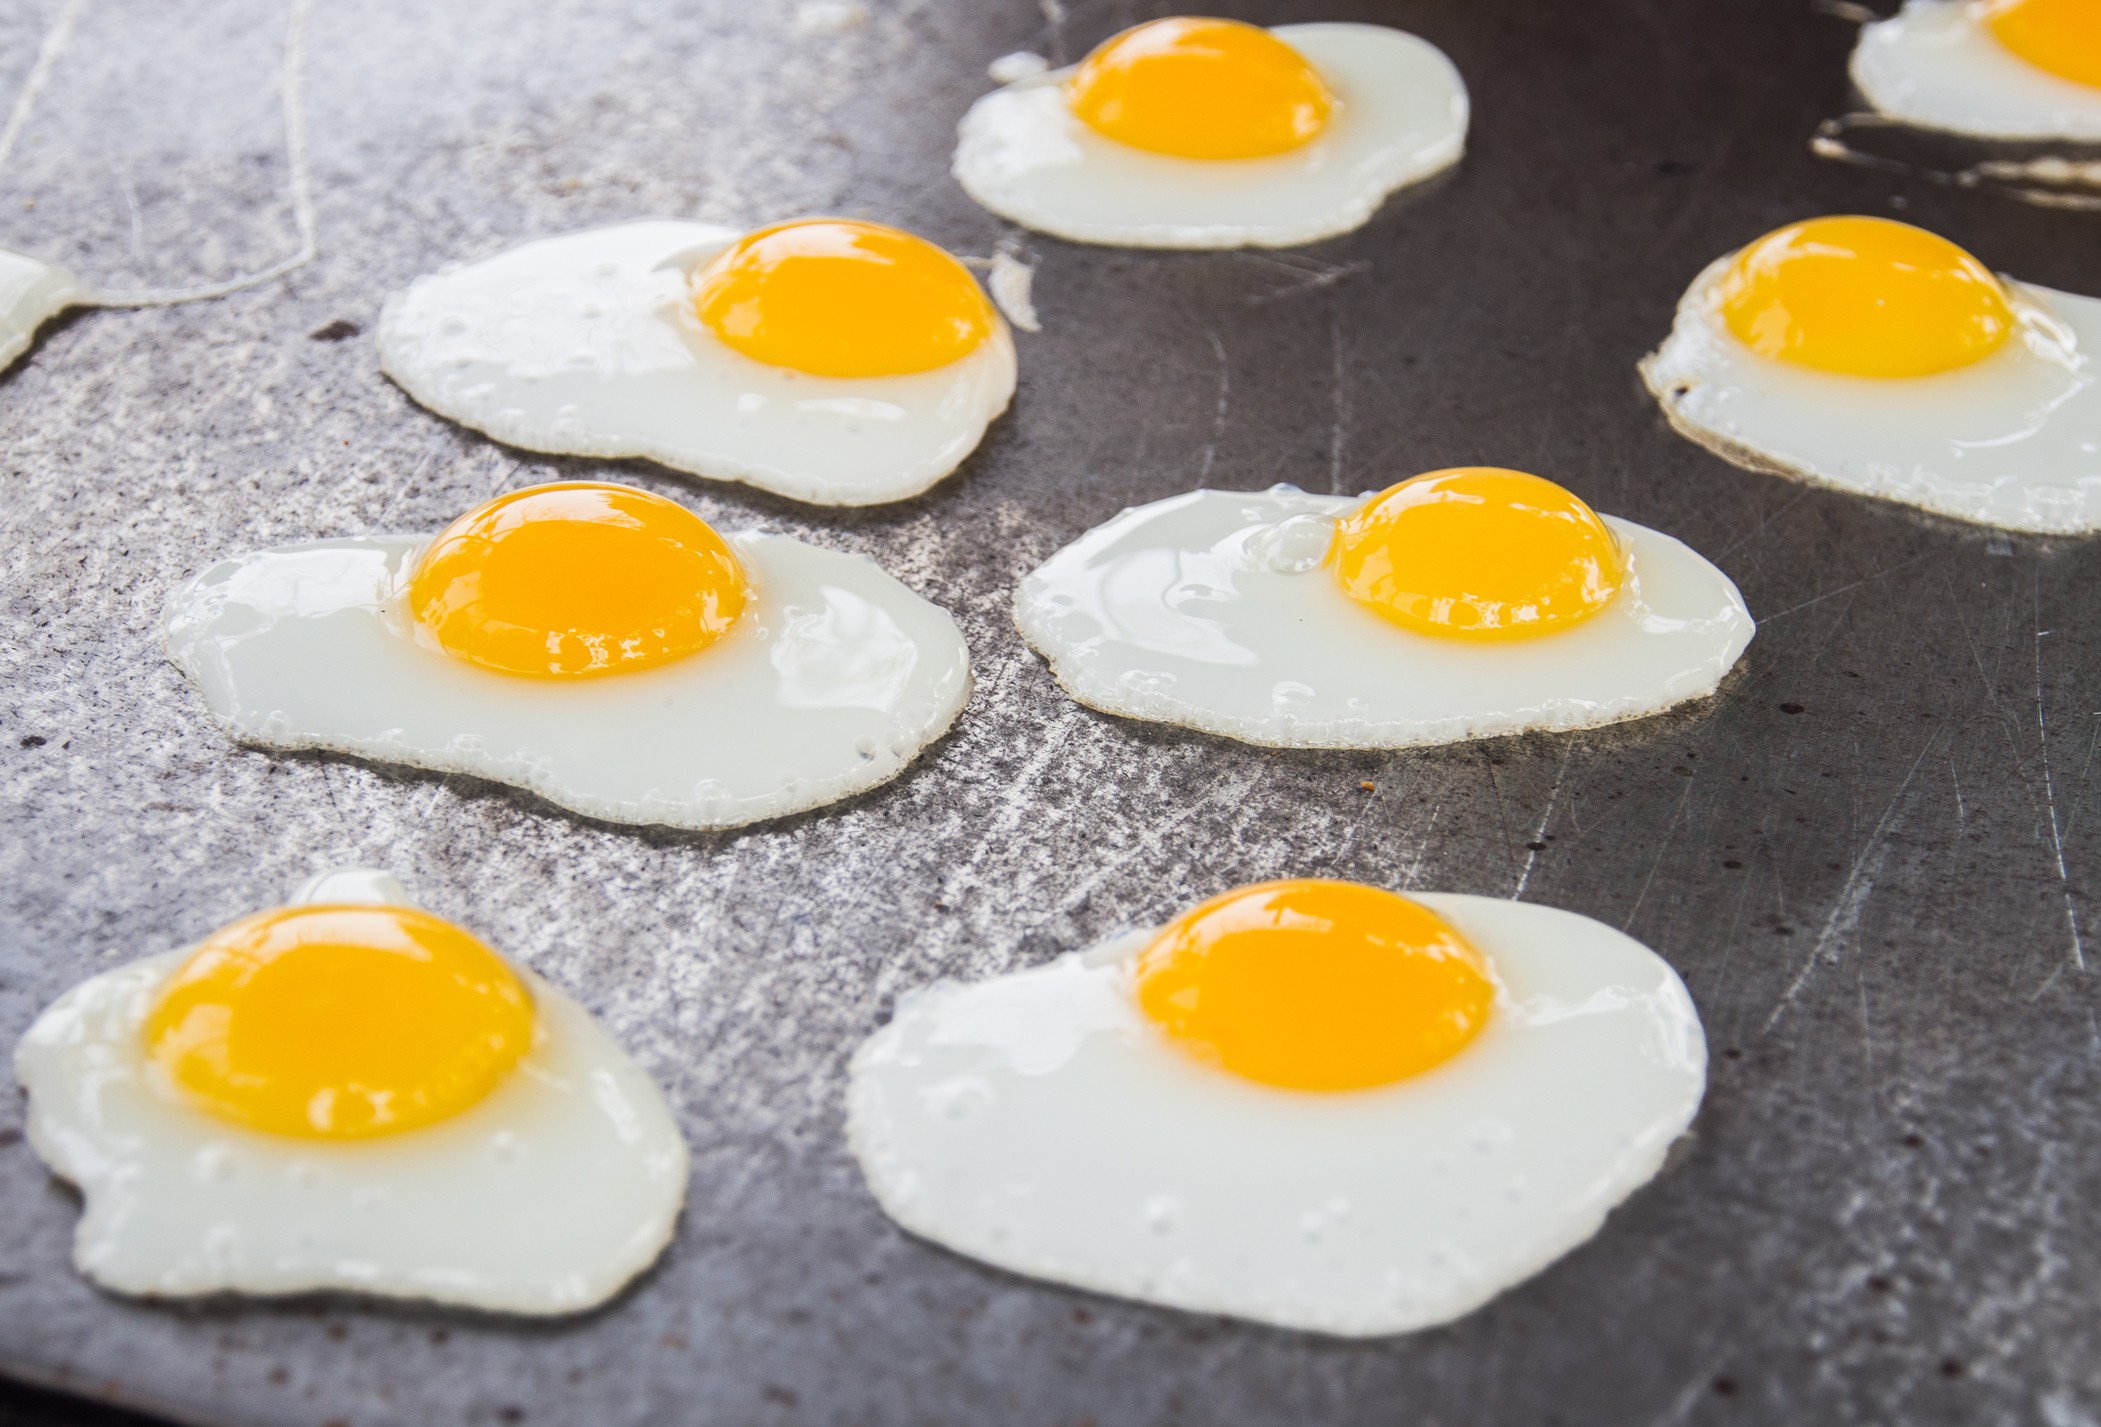 Câte ouă de prepeliță poți mânca intr-o zi și de ce sunt mai sănătoase decât ouăle de găină